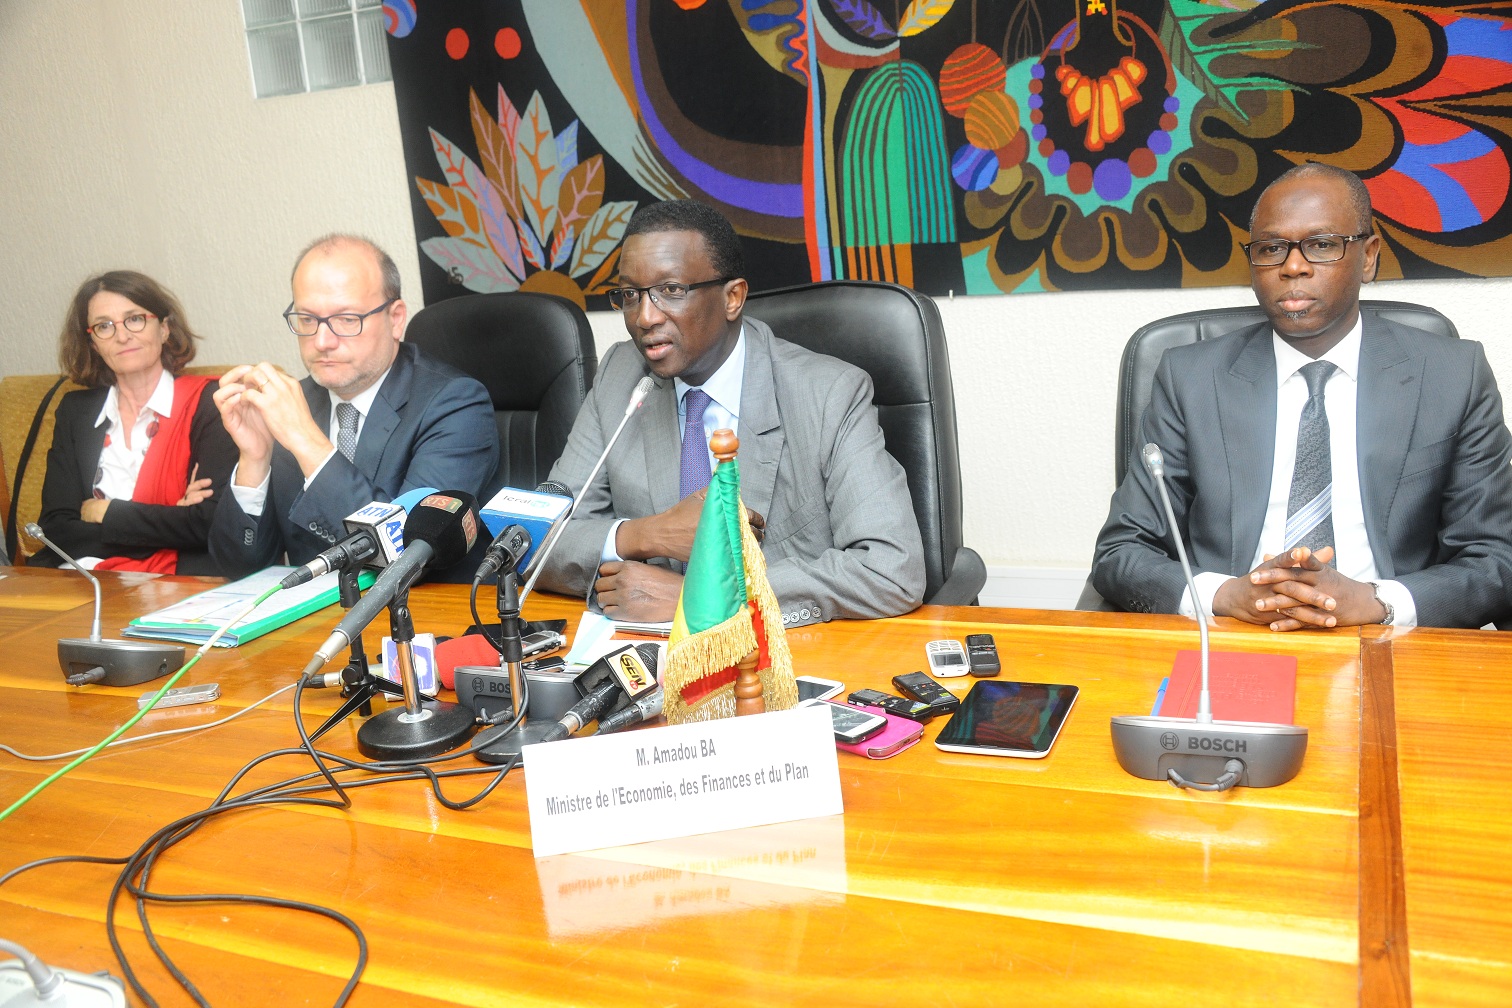 La cérémonie de signature de convention entre l'Afd et l'Etat du Sénégal en images